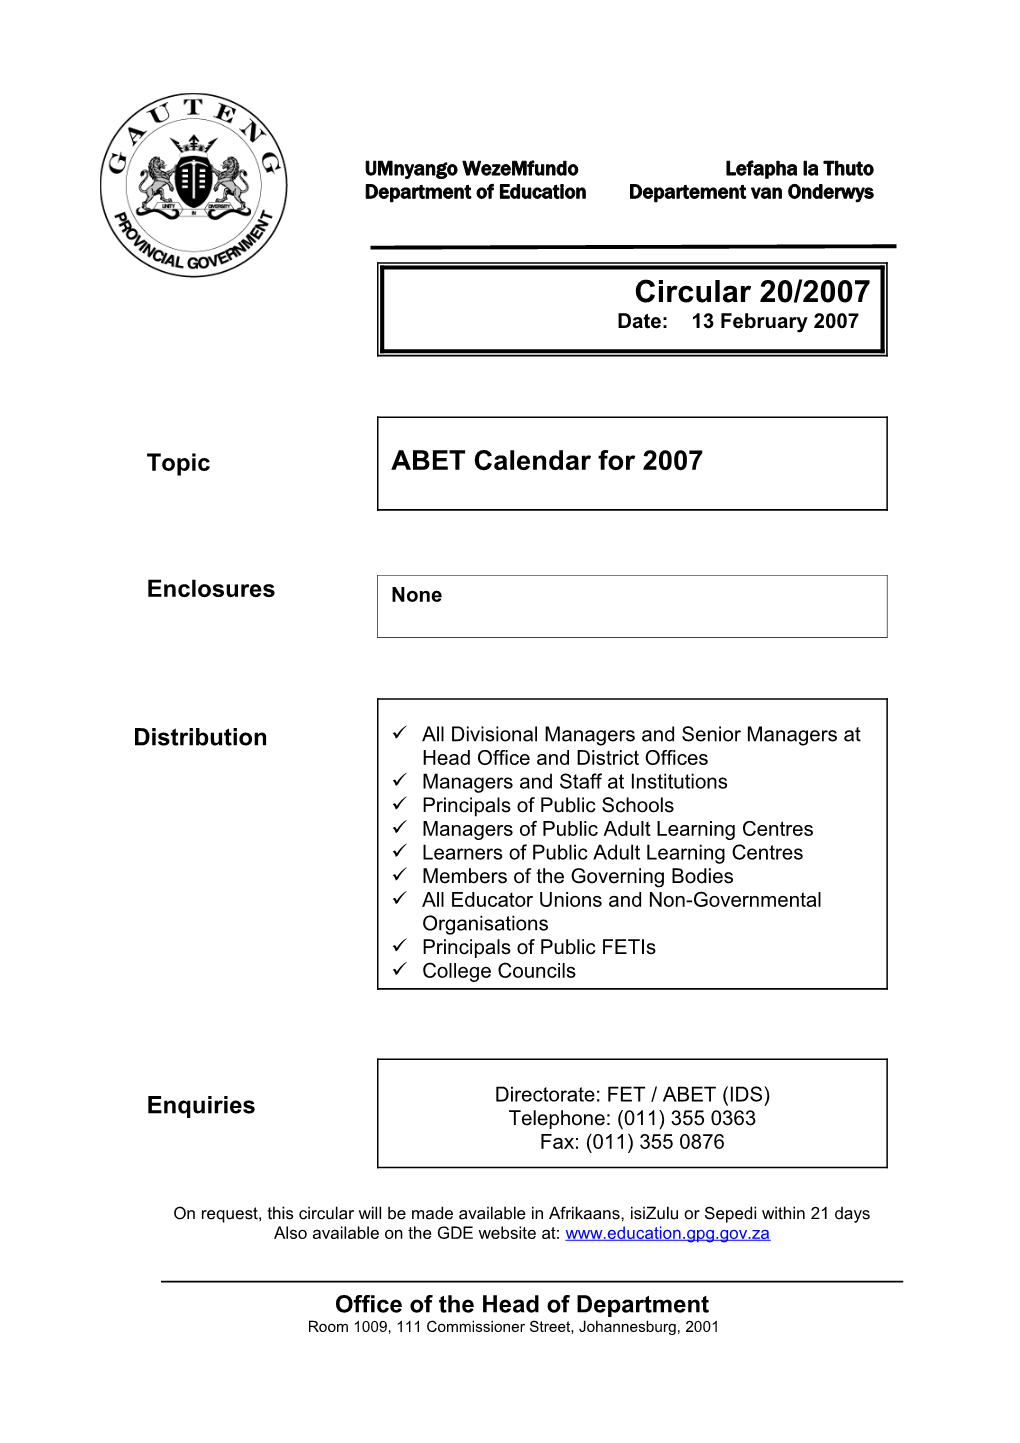 Circ 20/2007 ABET Calendar for 2007